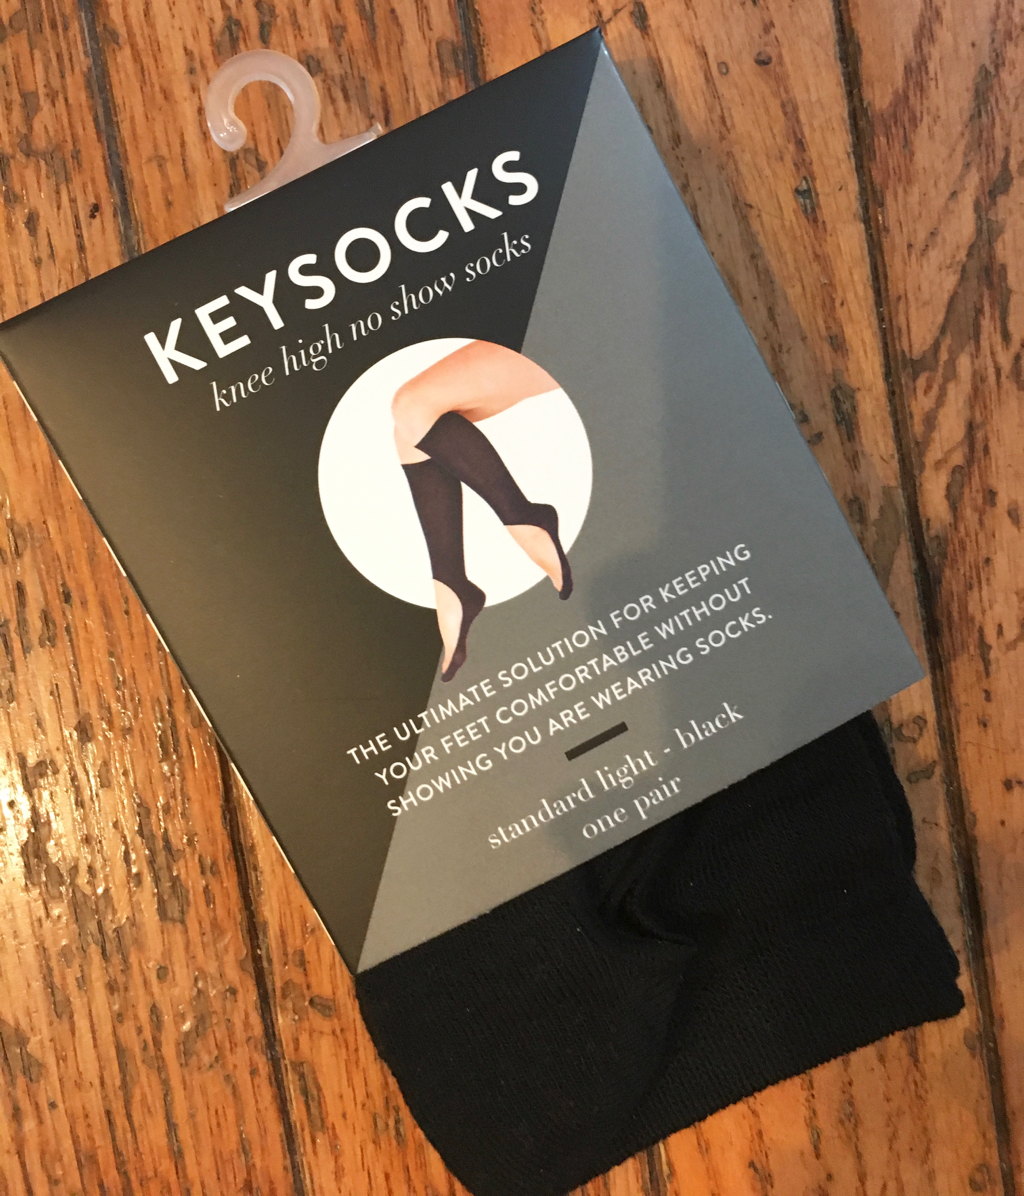 A Fancy Girl Must - Review: Keysocks no-show knee socks